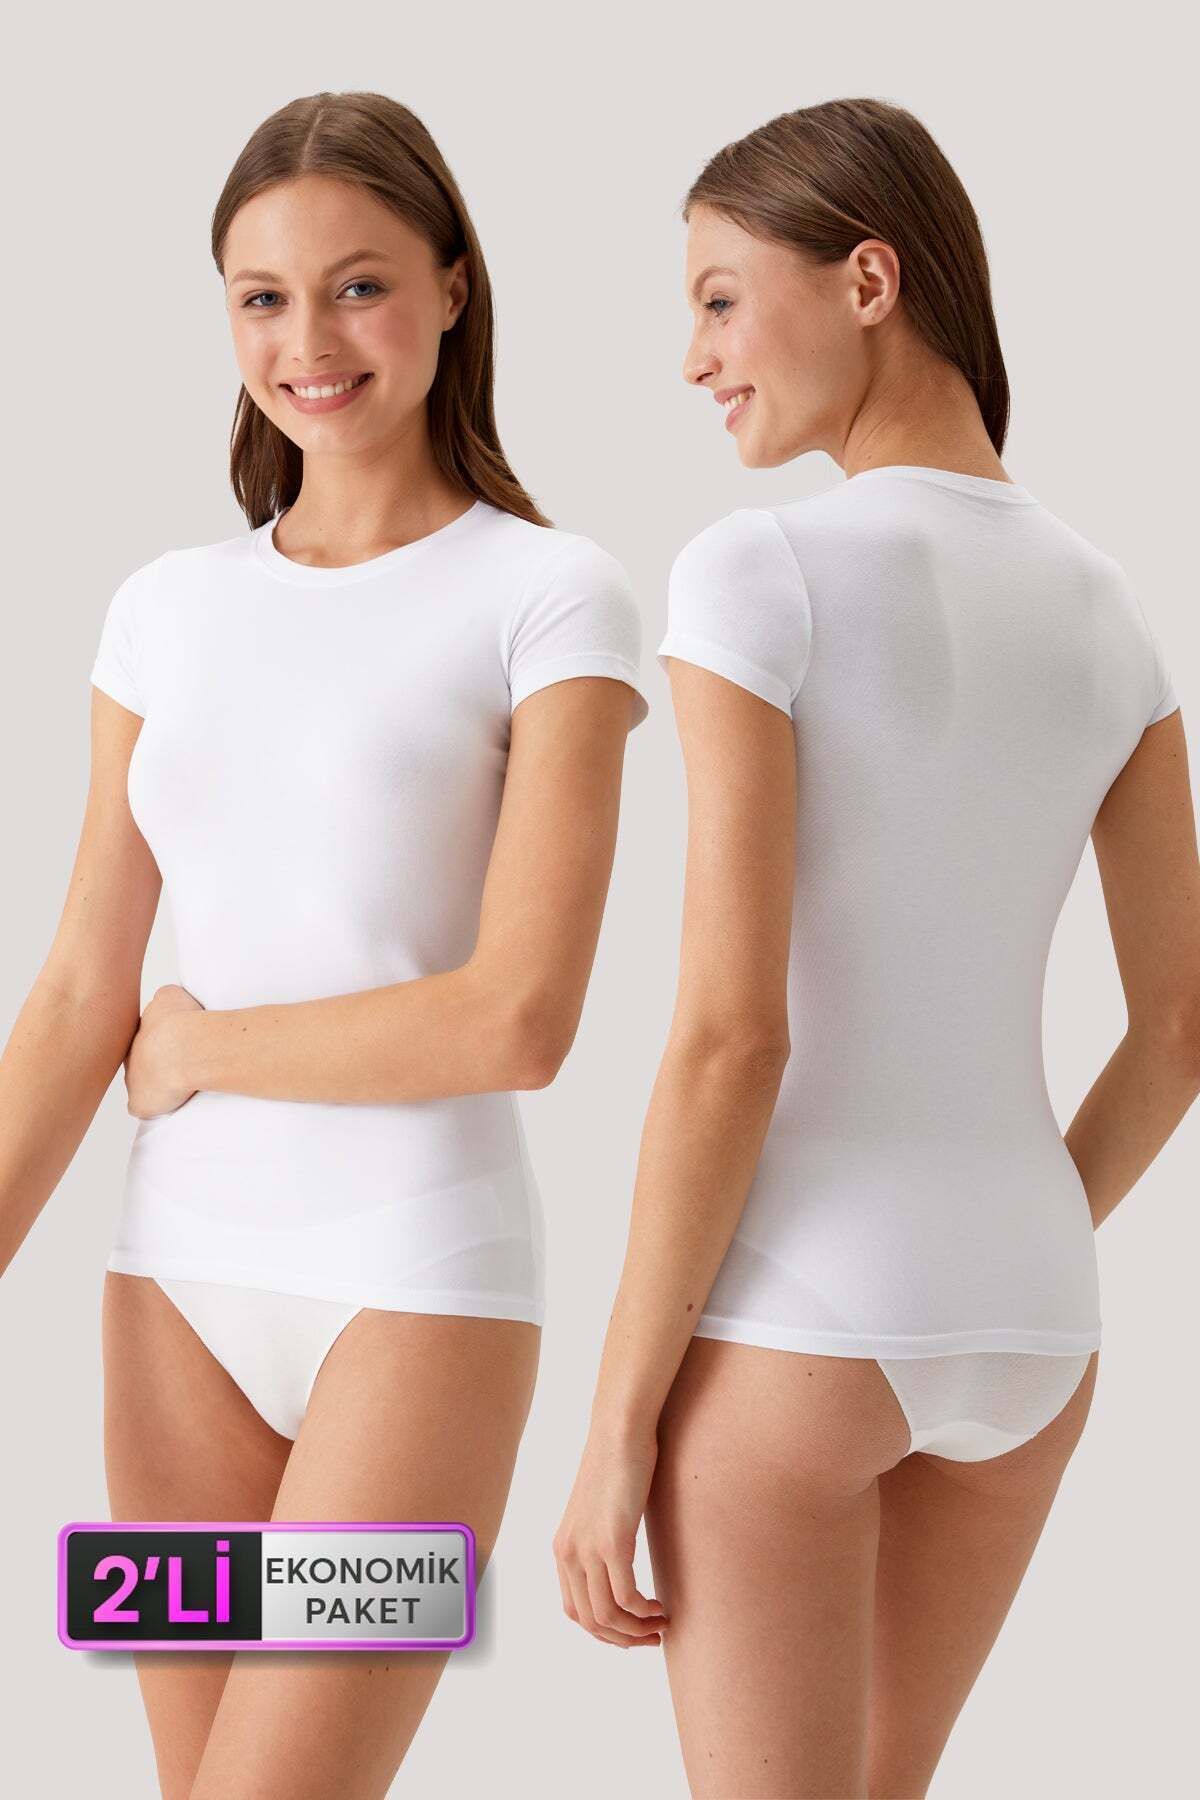 Pierre Cardin 2'li Ekonomik Paket Beyaz 1005 Kısa Kol Basic T-shirt - Atlet